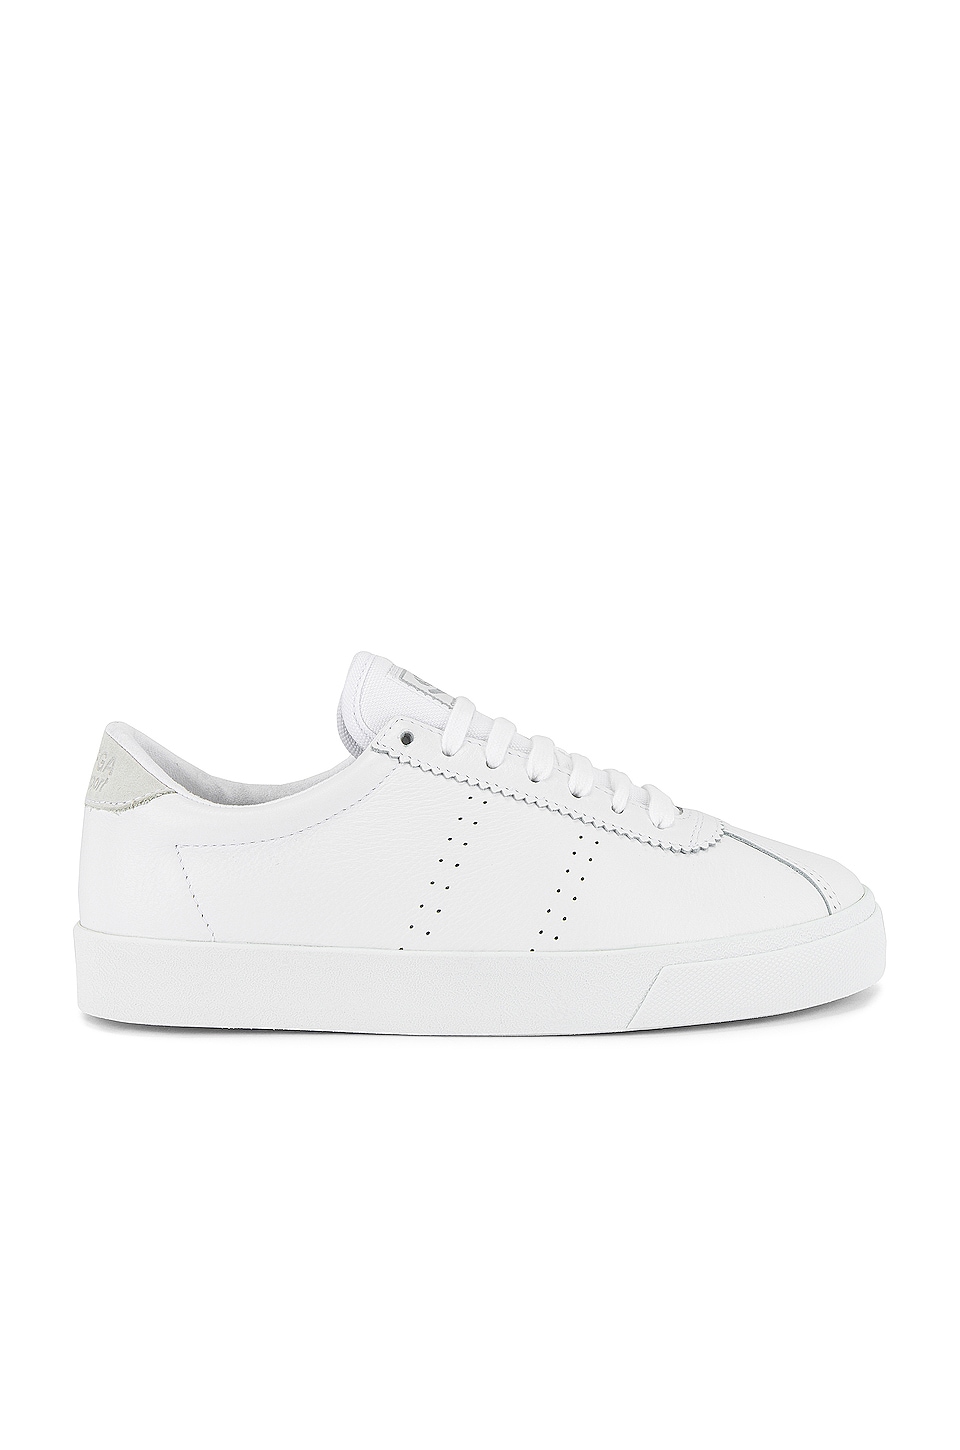 Superga 2843 COMFLEAU Sneaker in White | REVOLVE